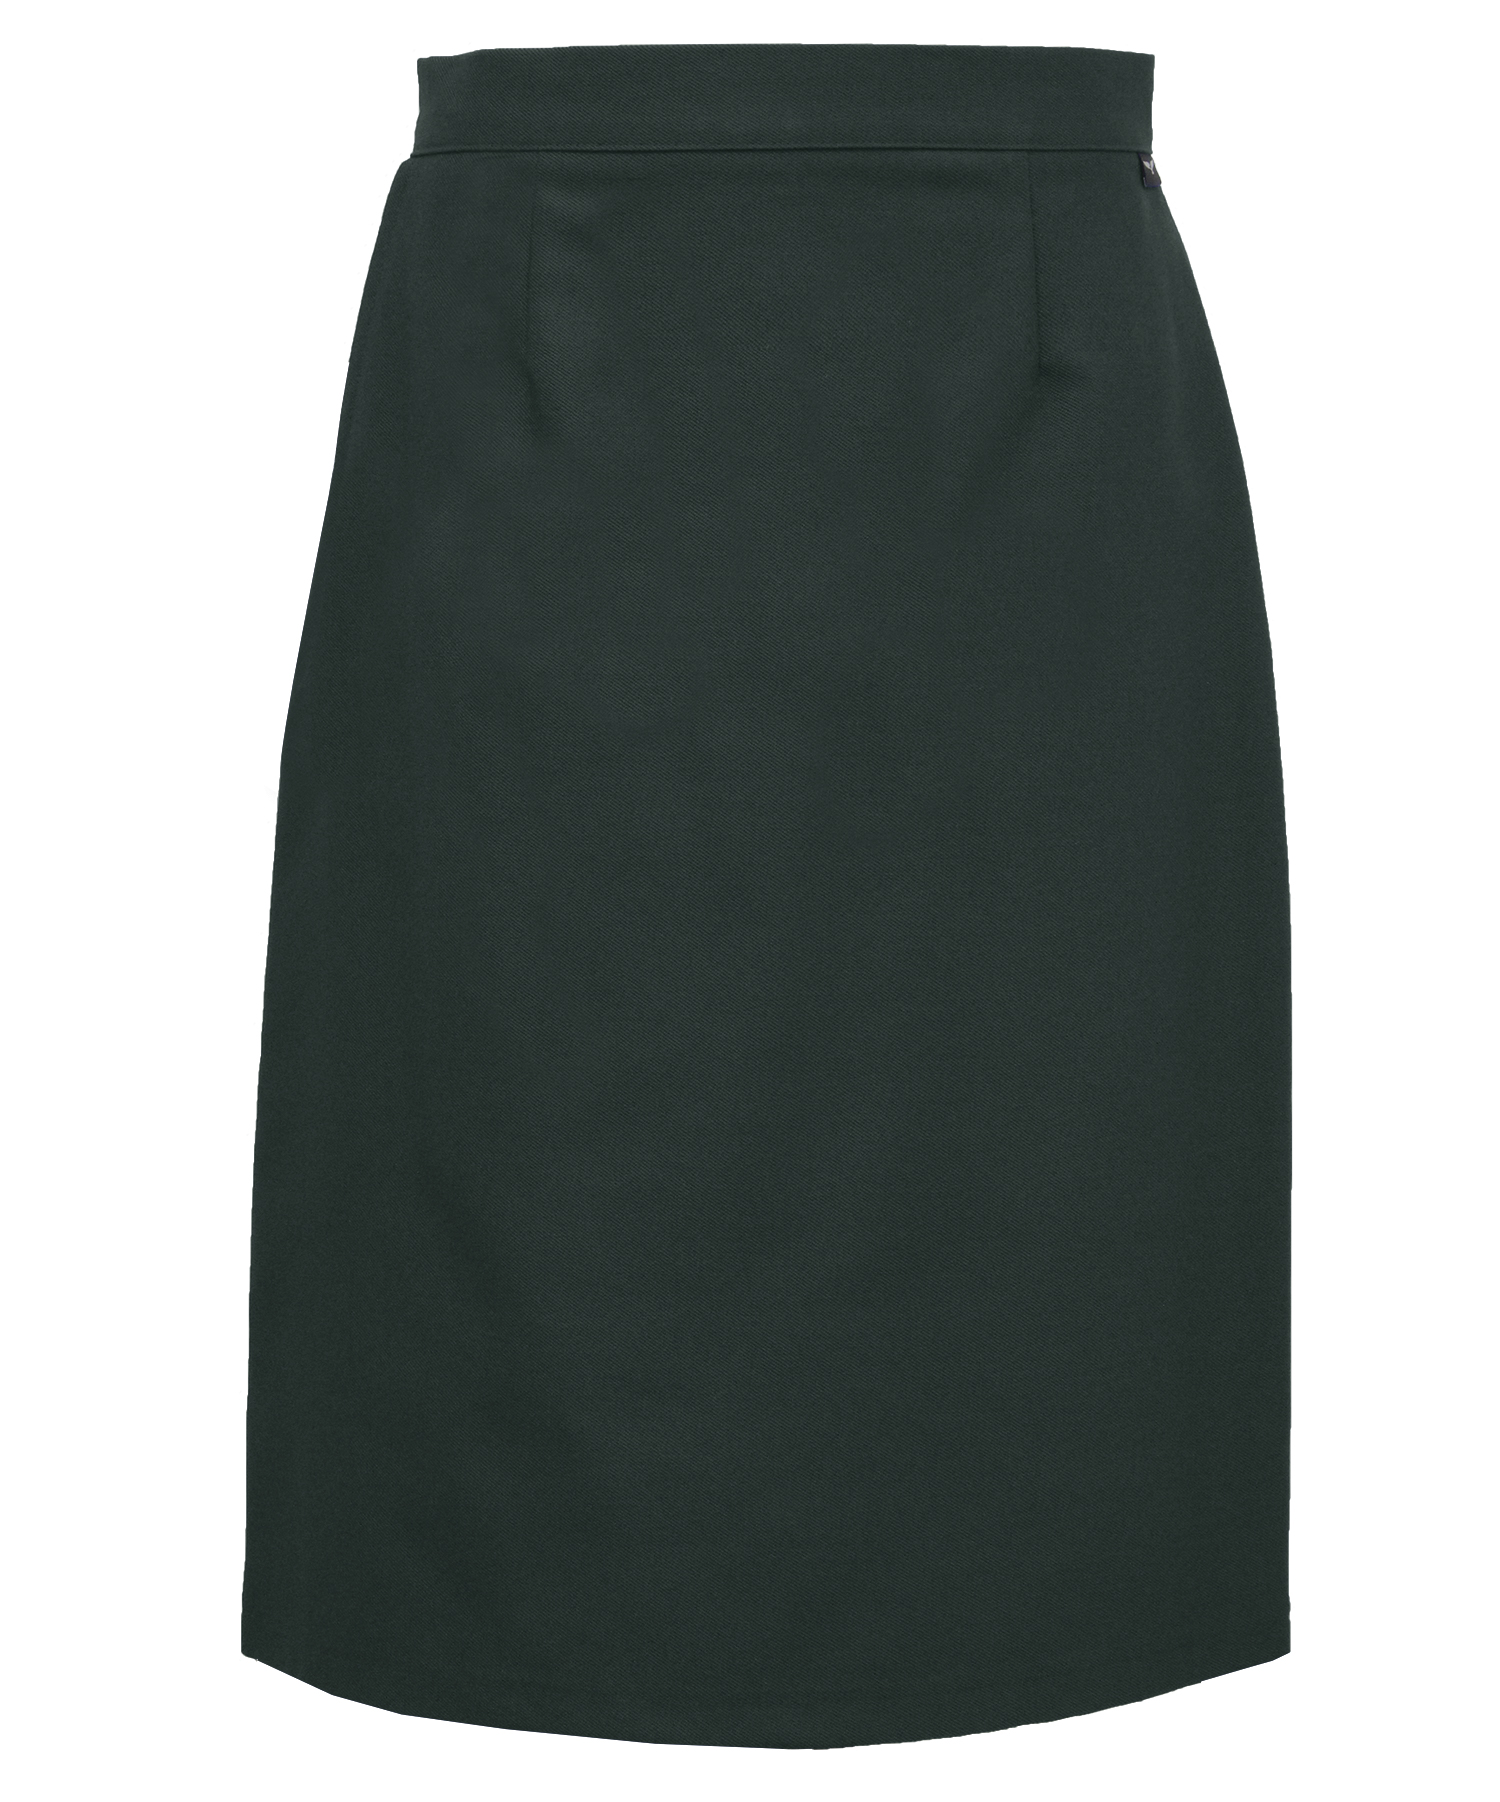 Bottle Green A-Line Skirt (T15) - Quality Schoolwear